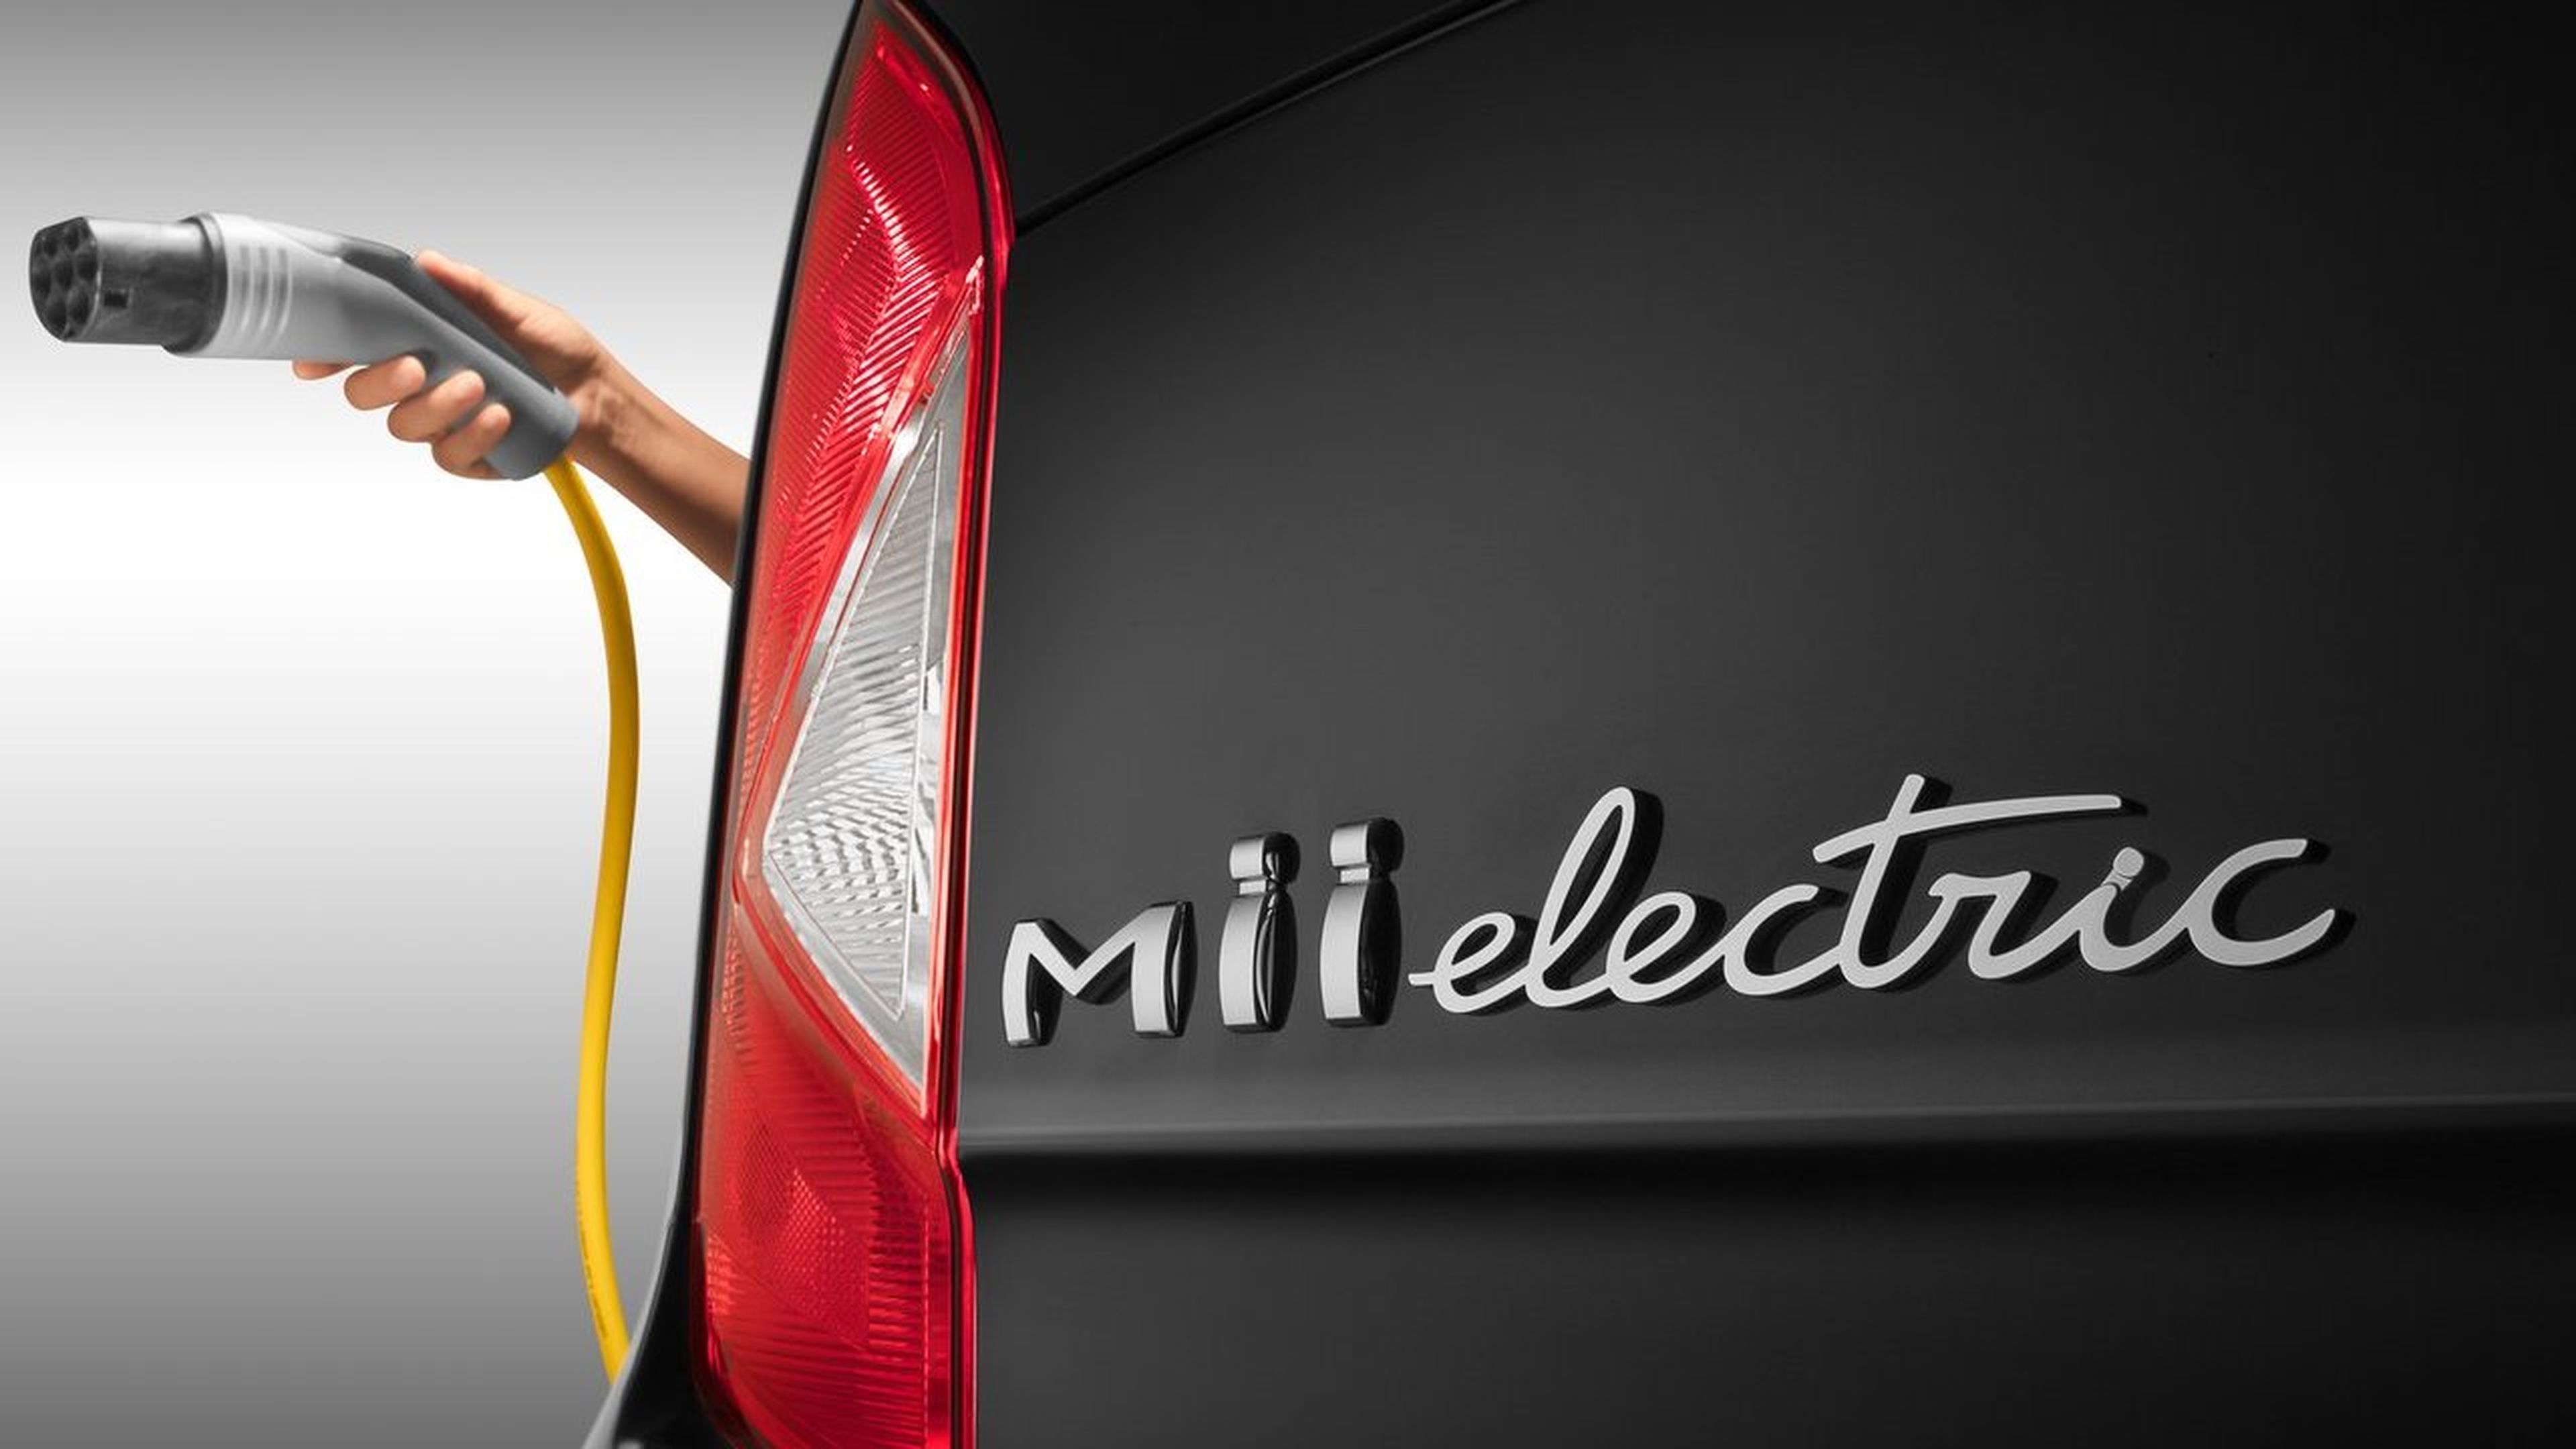 Seat Mii Electric